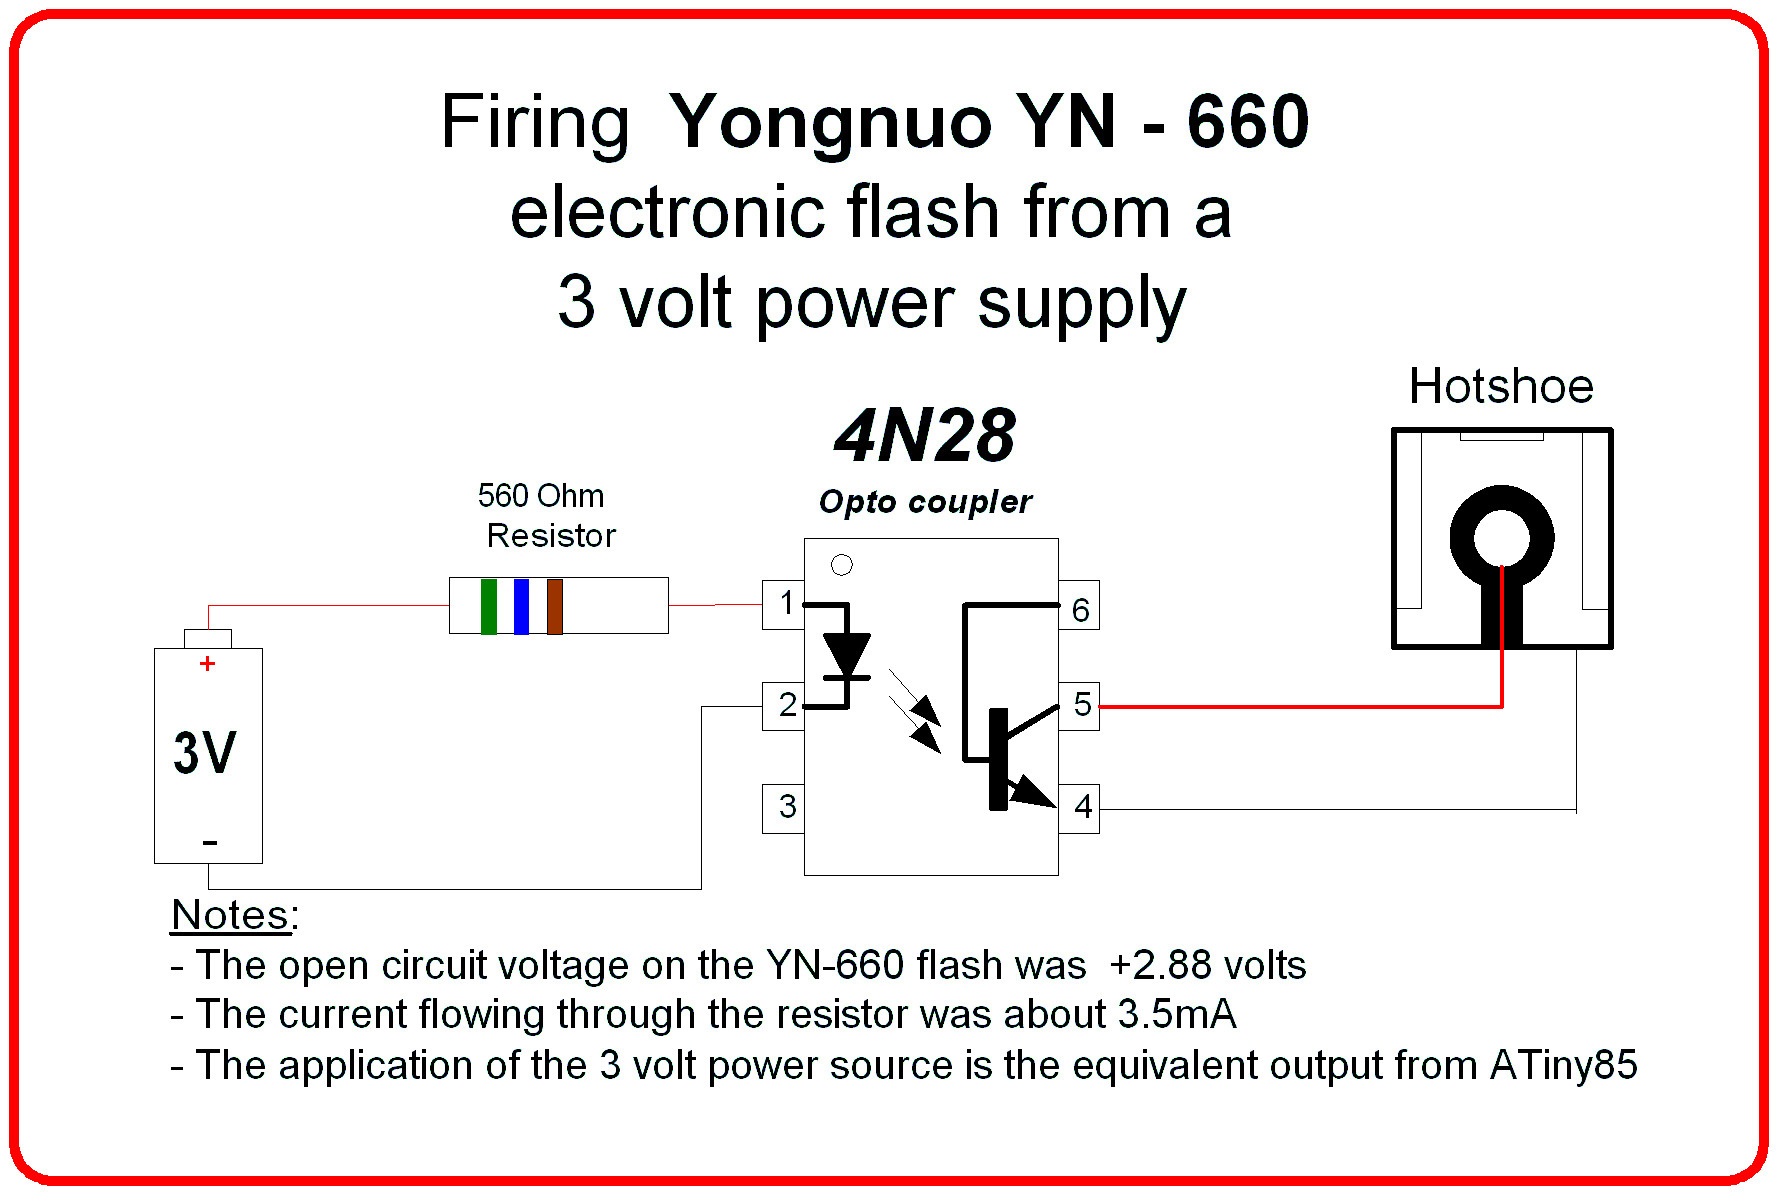 Fireing Yongnuo YN-660